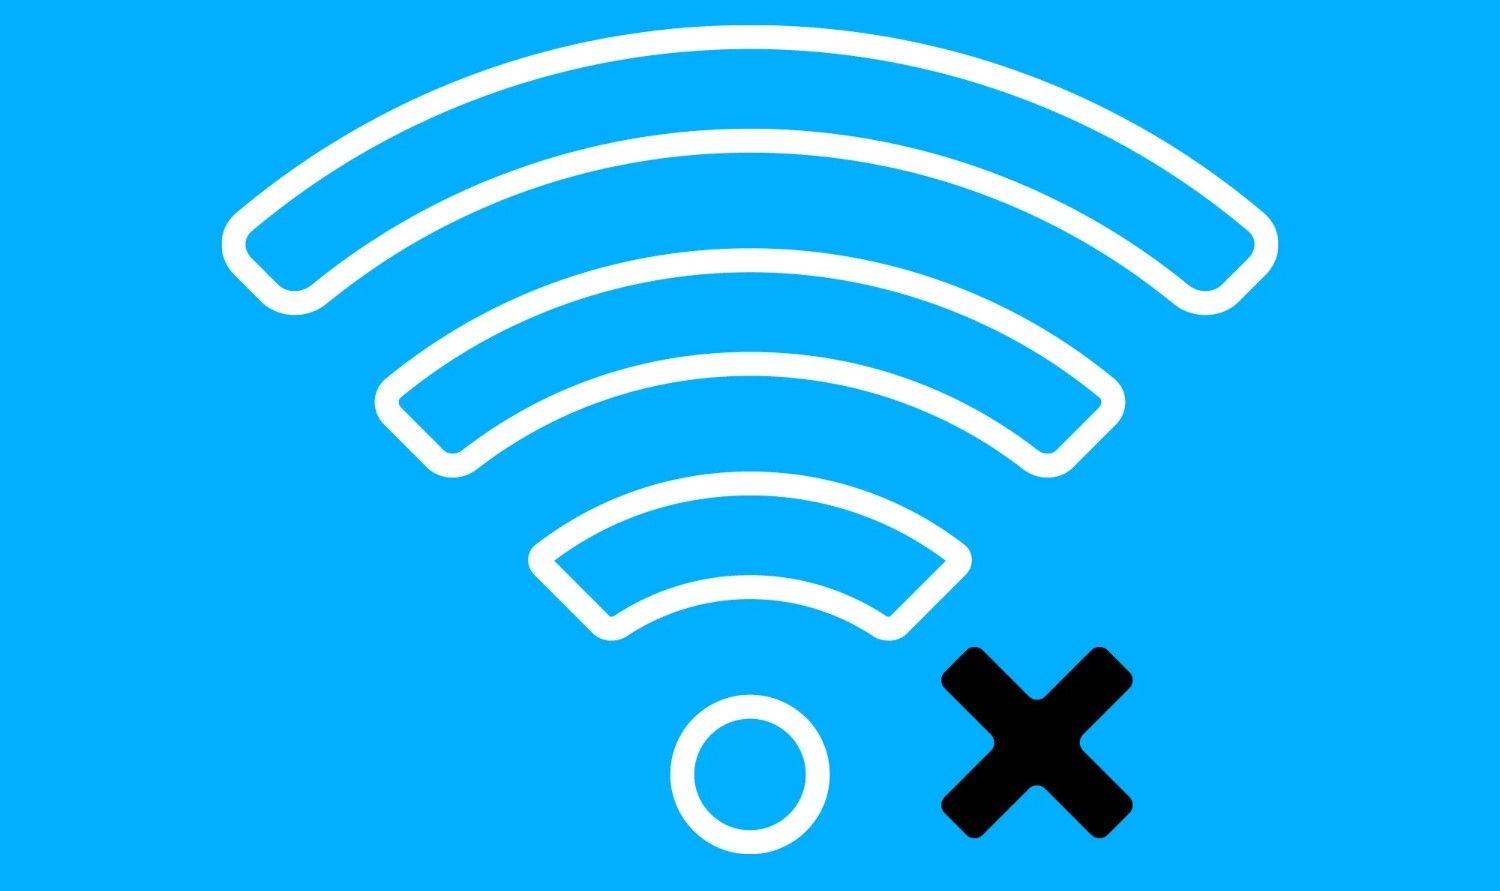 weak wifi signals